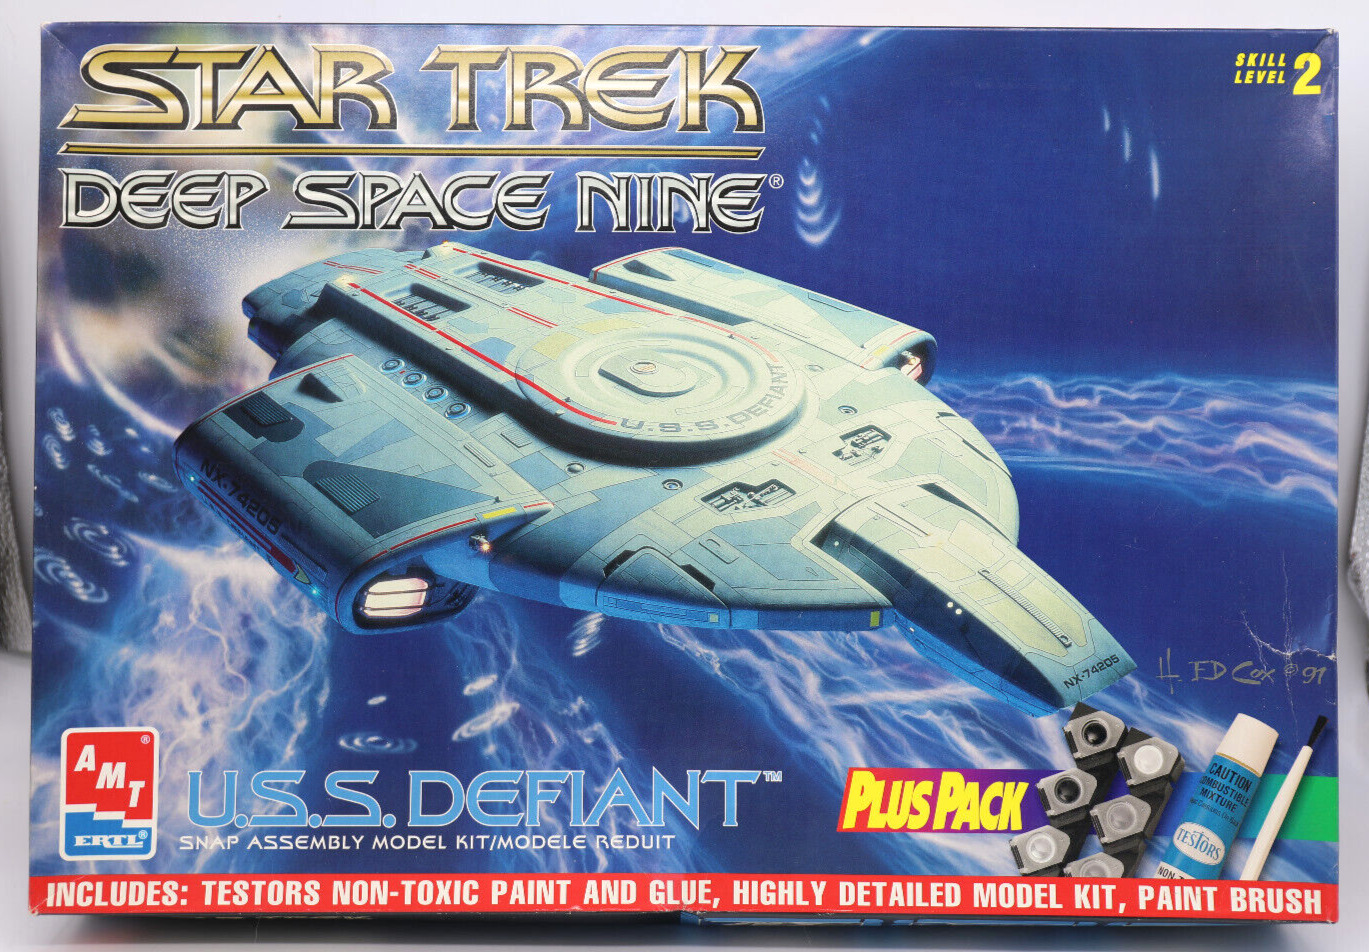 New STAR TREK DEEP SPACE NINE U.S.S.  DEFIANT model kit (amt ertl) plus pack